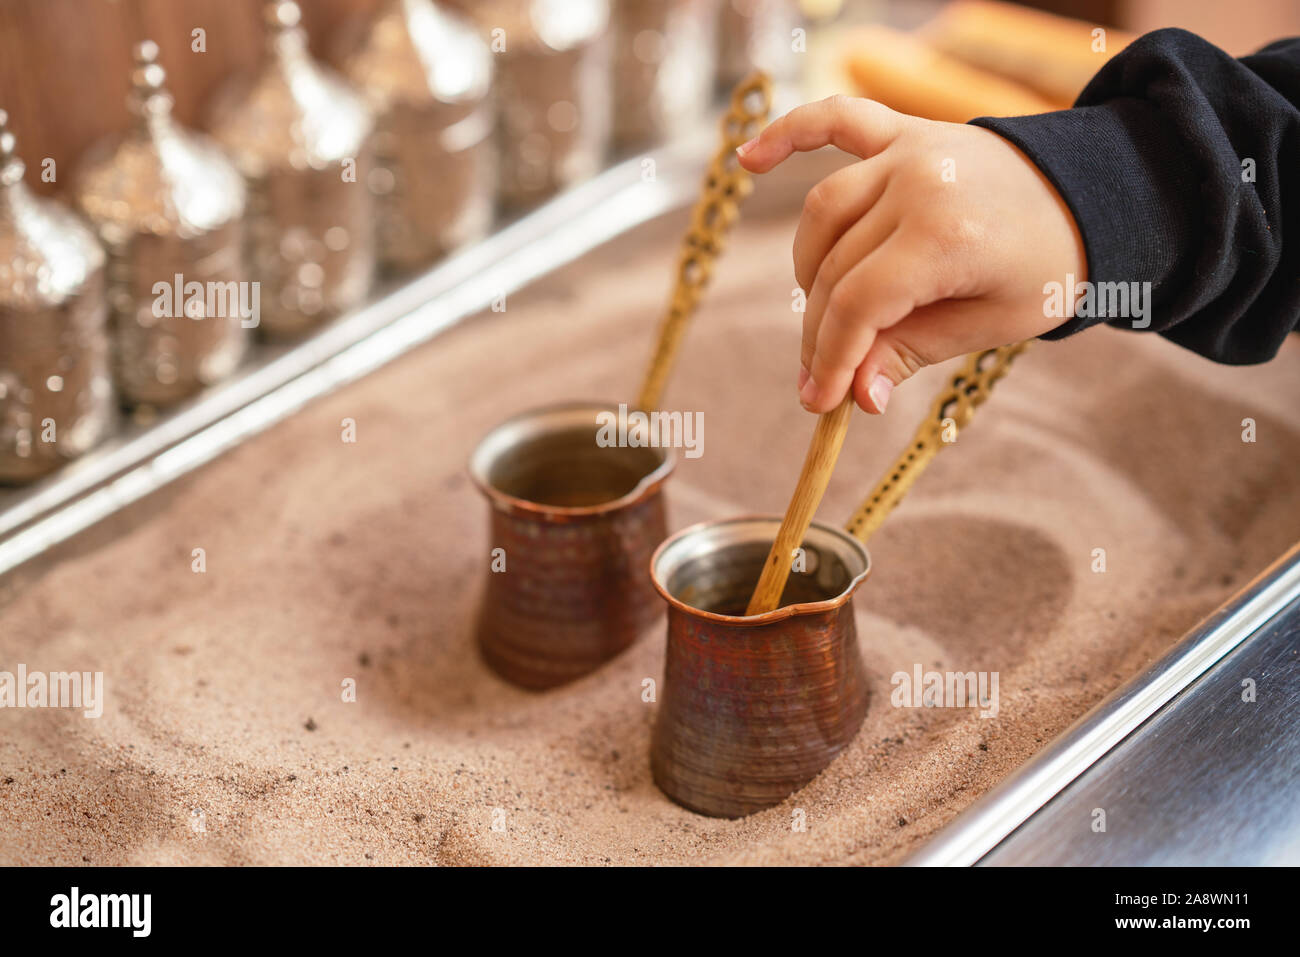 Turca tradizionale caffè servito nella sabbia per ottenere i migliori aromi. Foto Stock